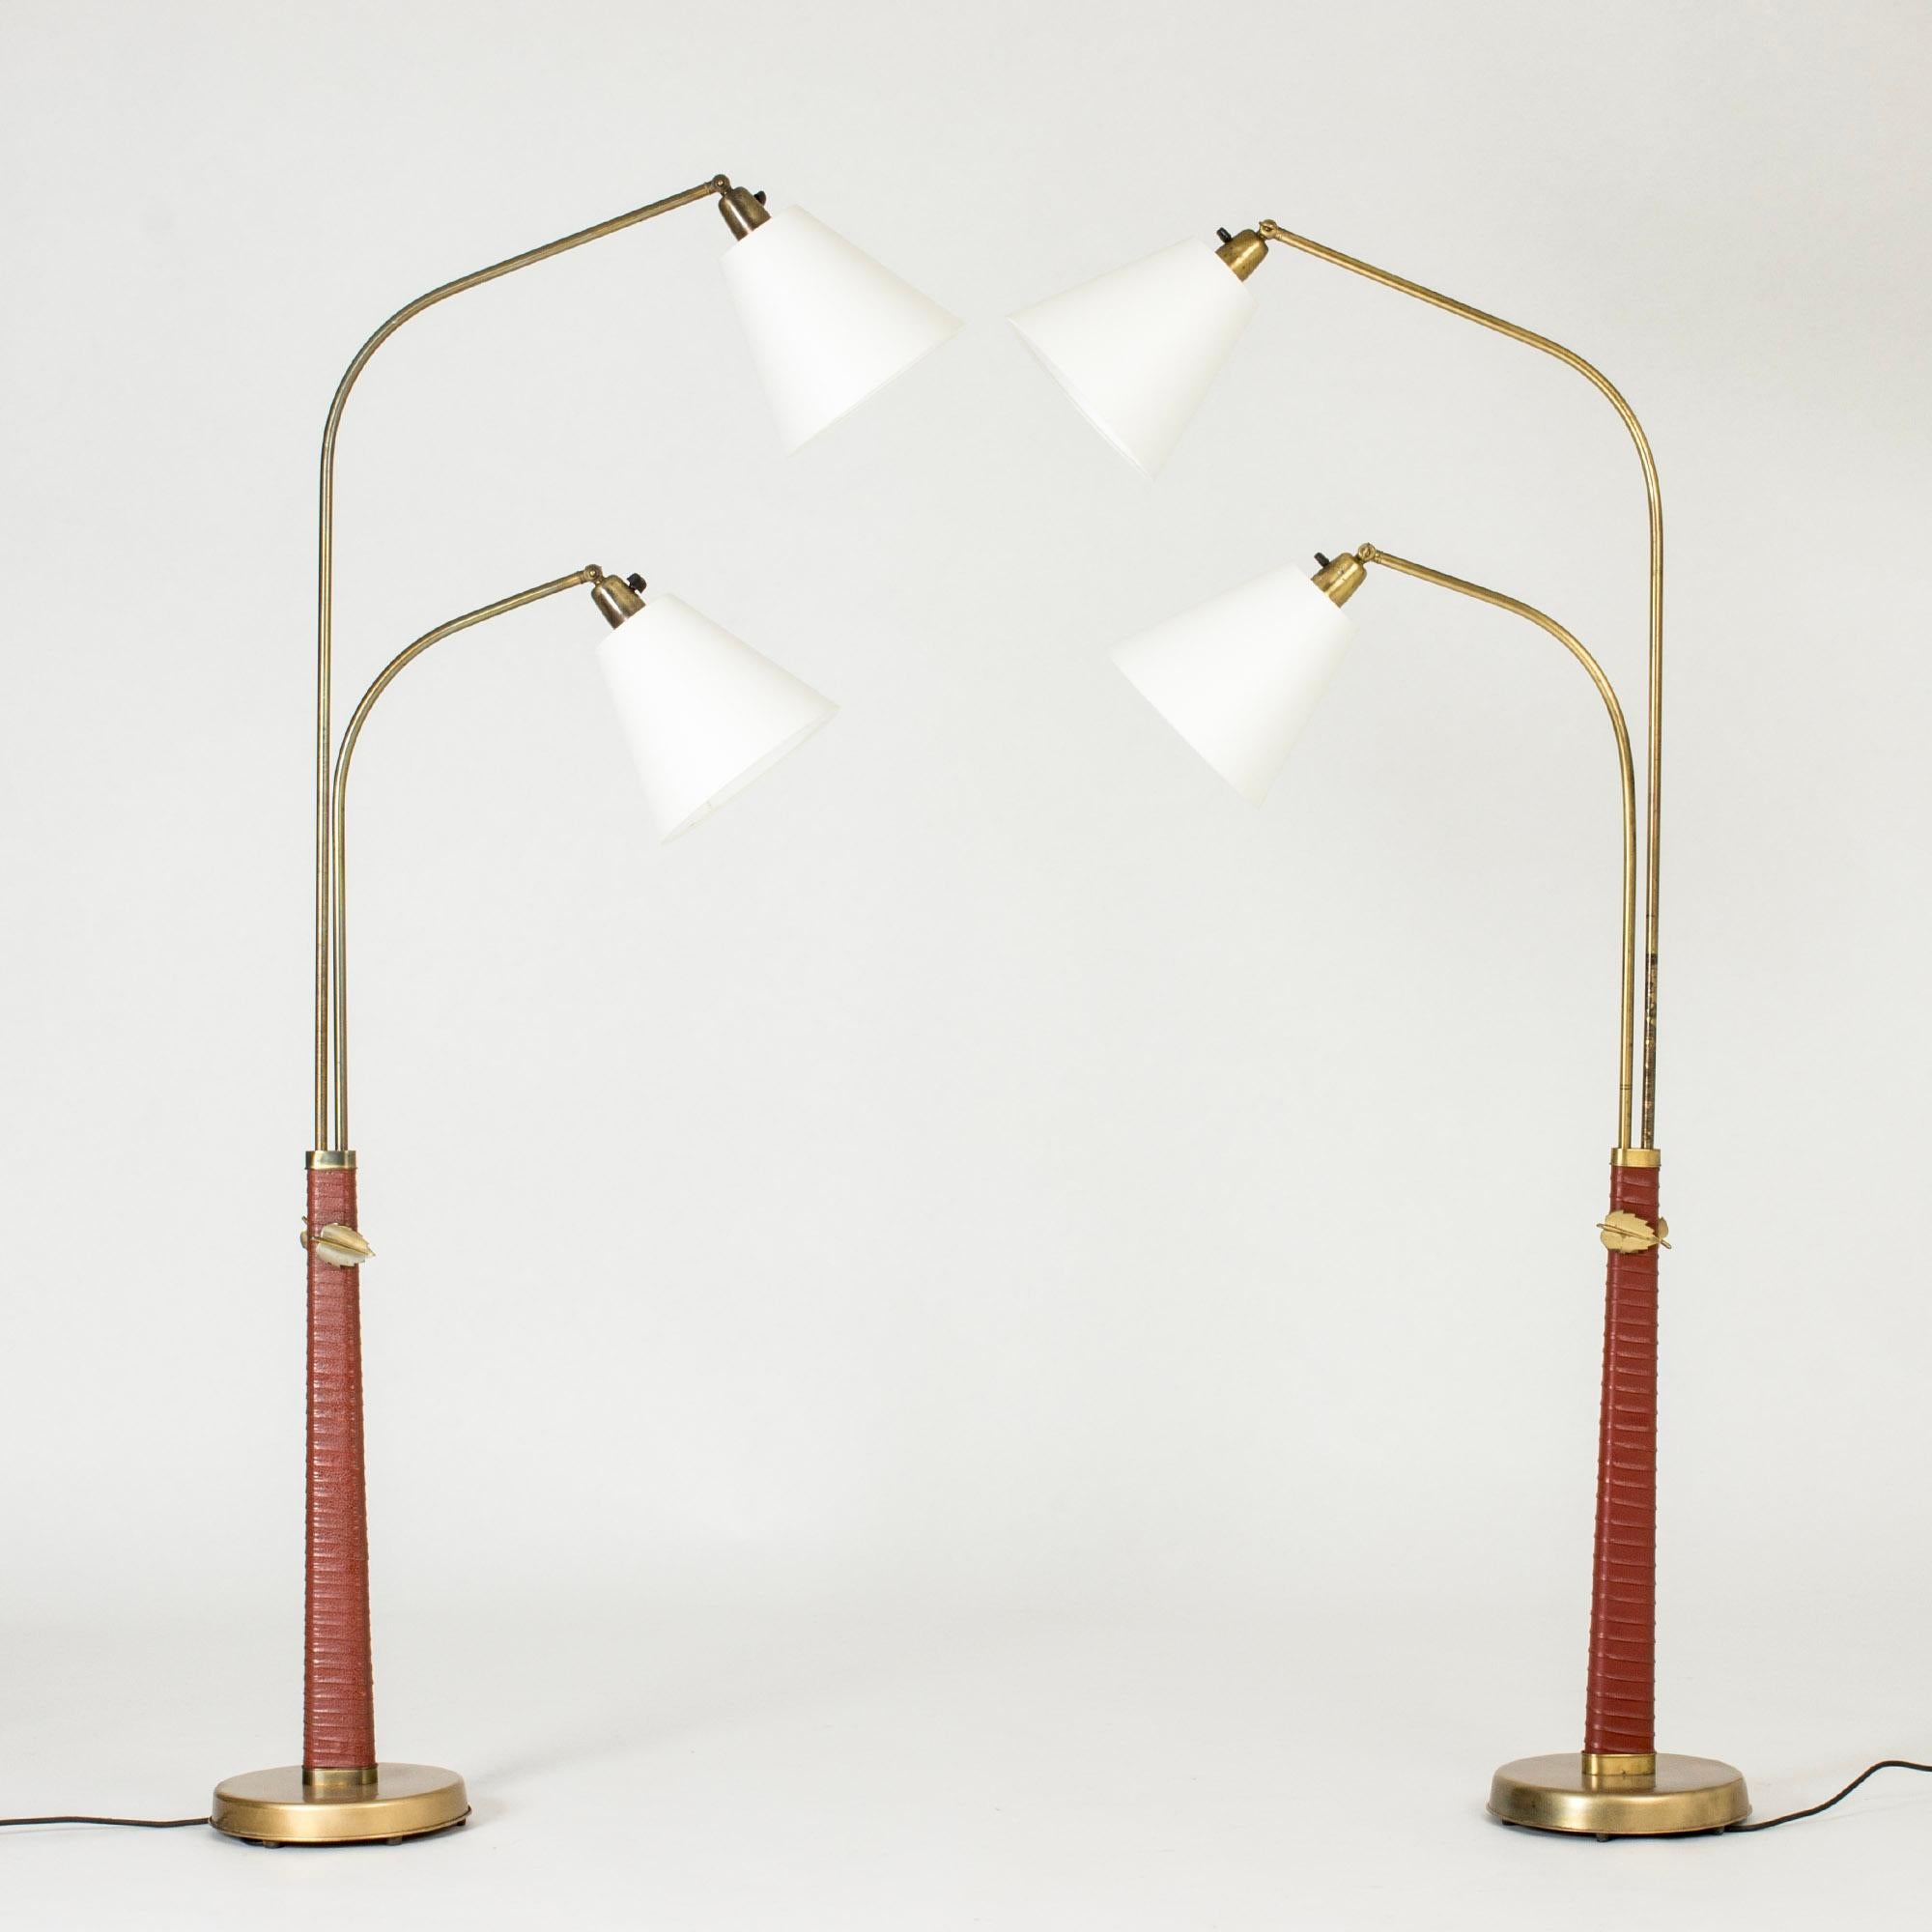 Paar seltene Stehlampen von Hans Bergström, frühes Modell aus den 1930er Jahren. Doppelte Messingstiele und Lampenschirme, die in verschiedene Positionen geschwenkt werden können. Spitz zulaufende Sockel mit braunem Leder umwickelt. Dekorative